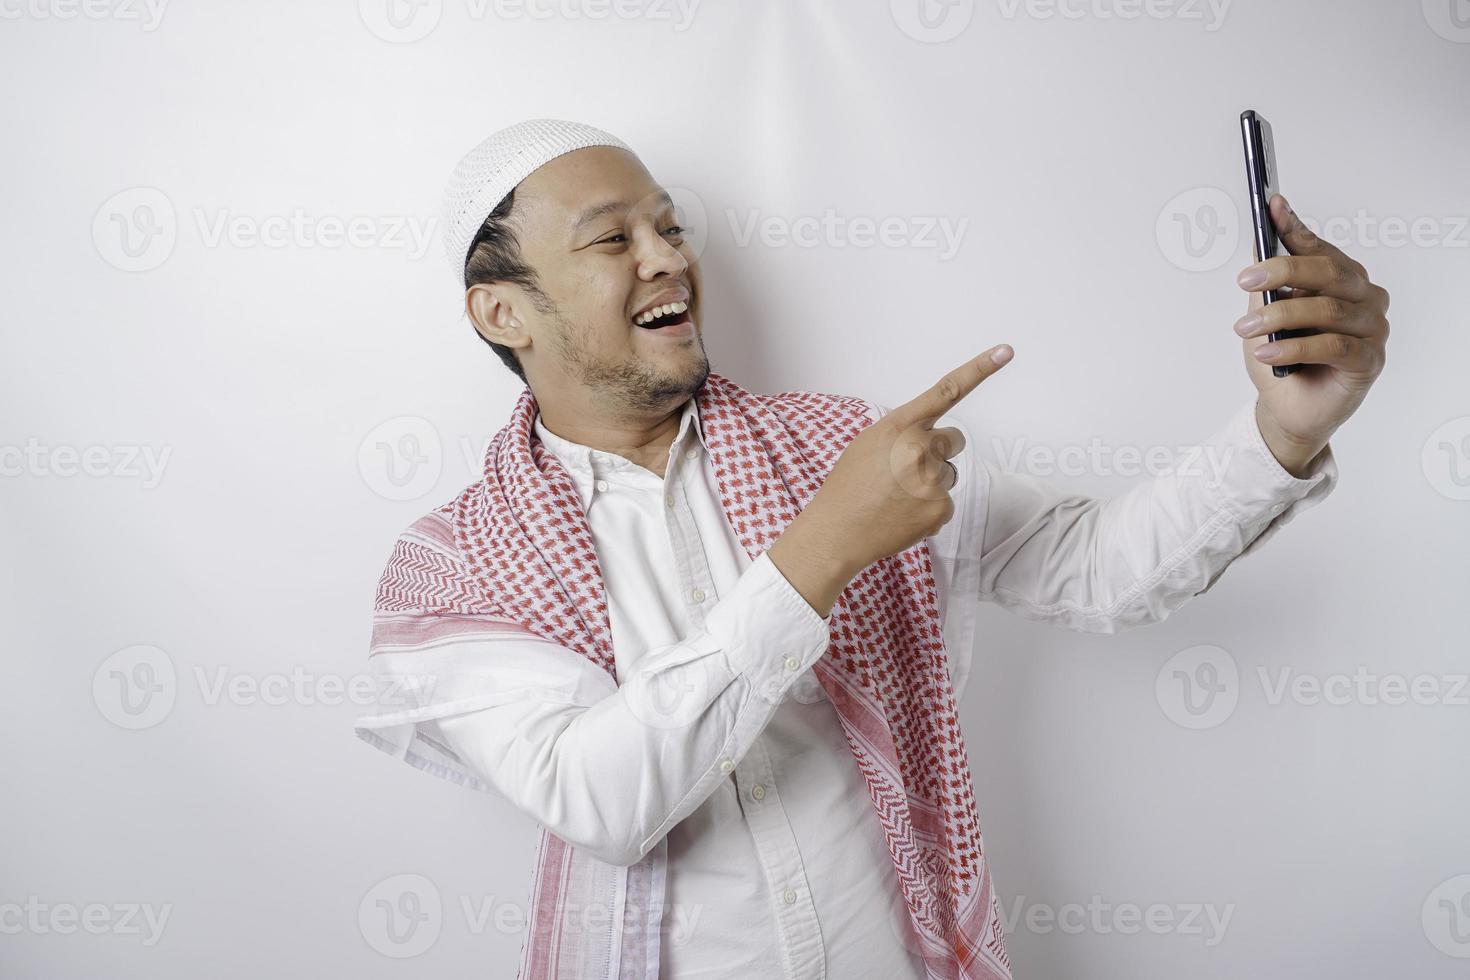 un retrato de un musulmán asiático feliz sonriendo mientras sostiene su teléfono, aislado por fondo blanco foto